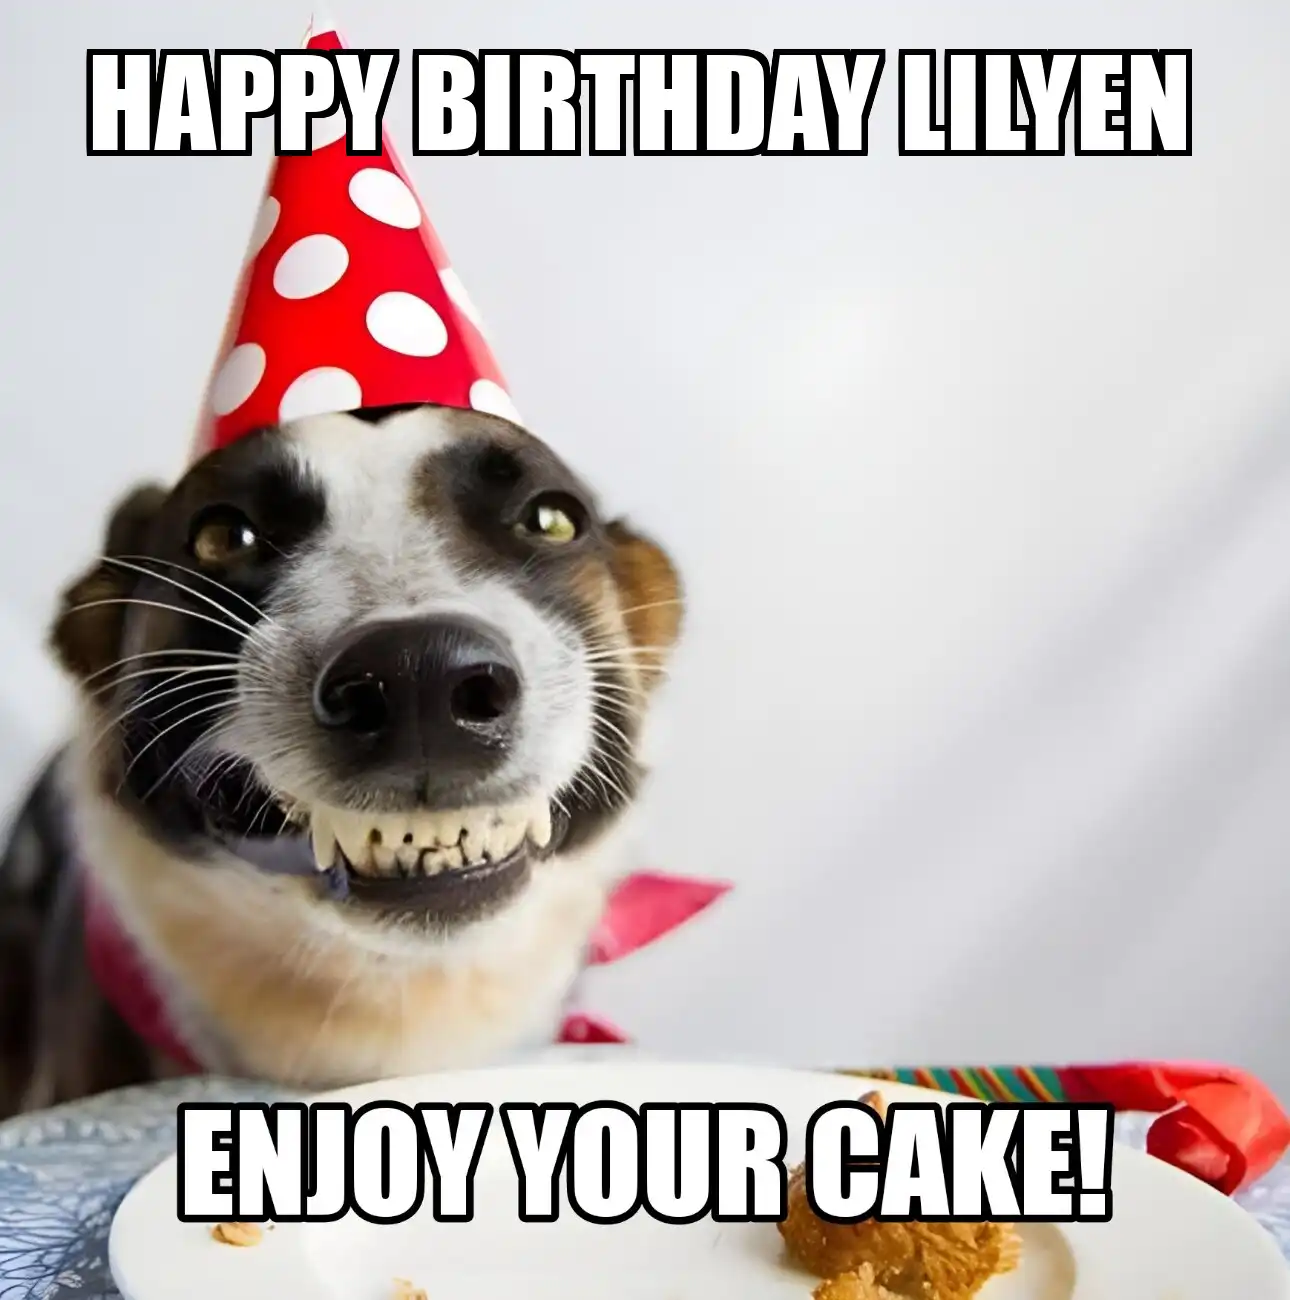 Happy Birthday Lilyen Enjoy Your Cake Dog Meme